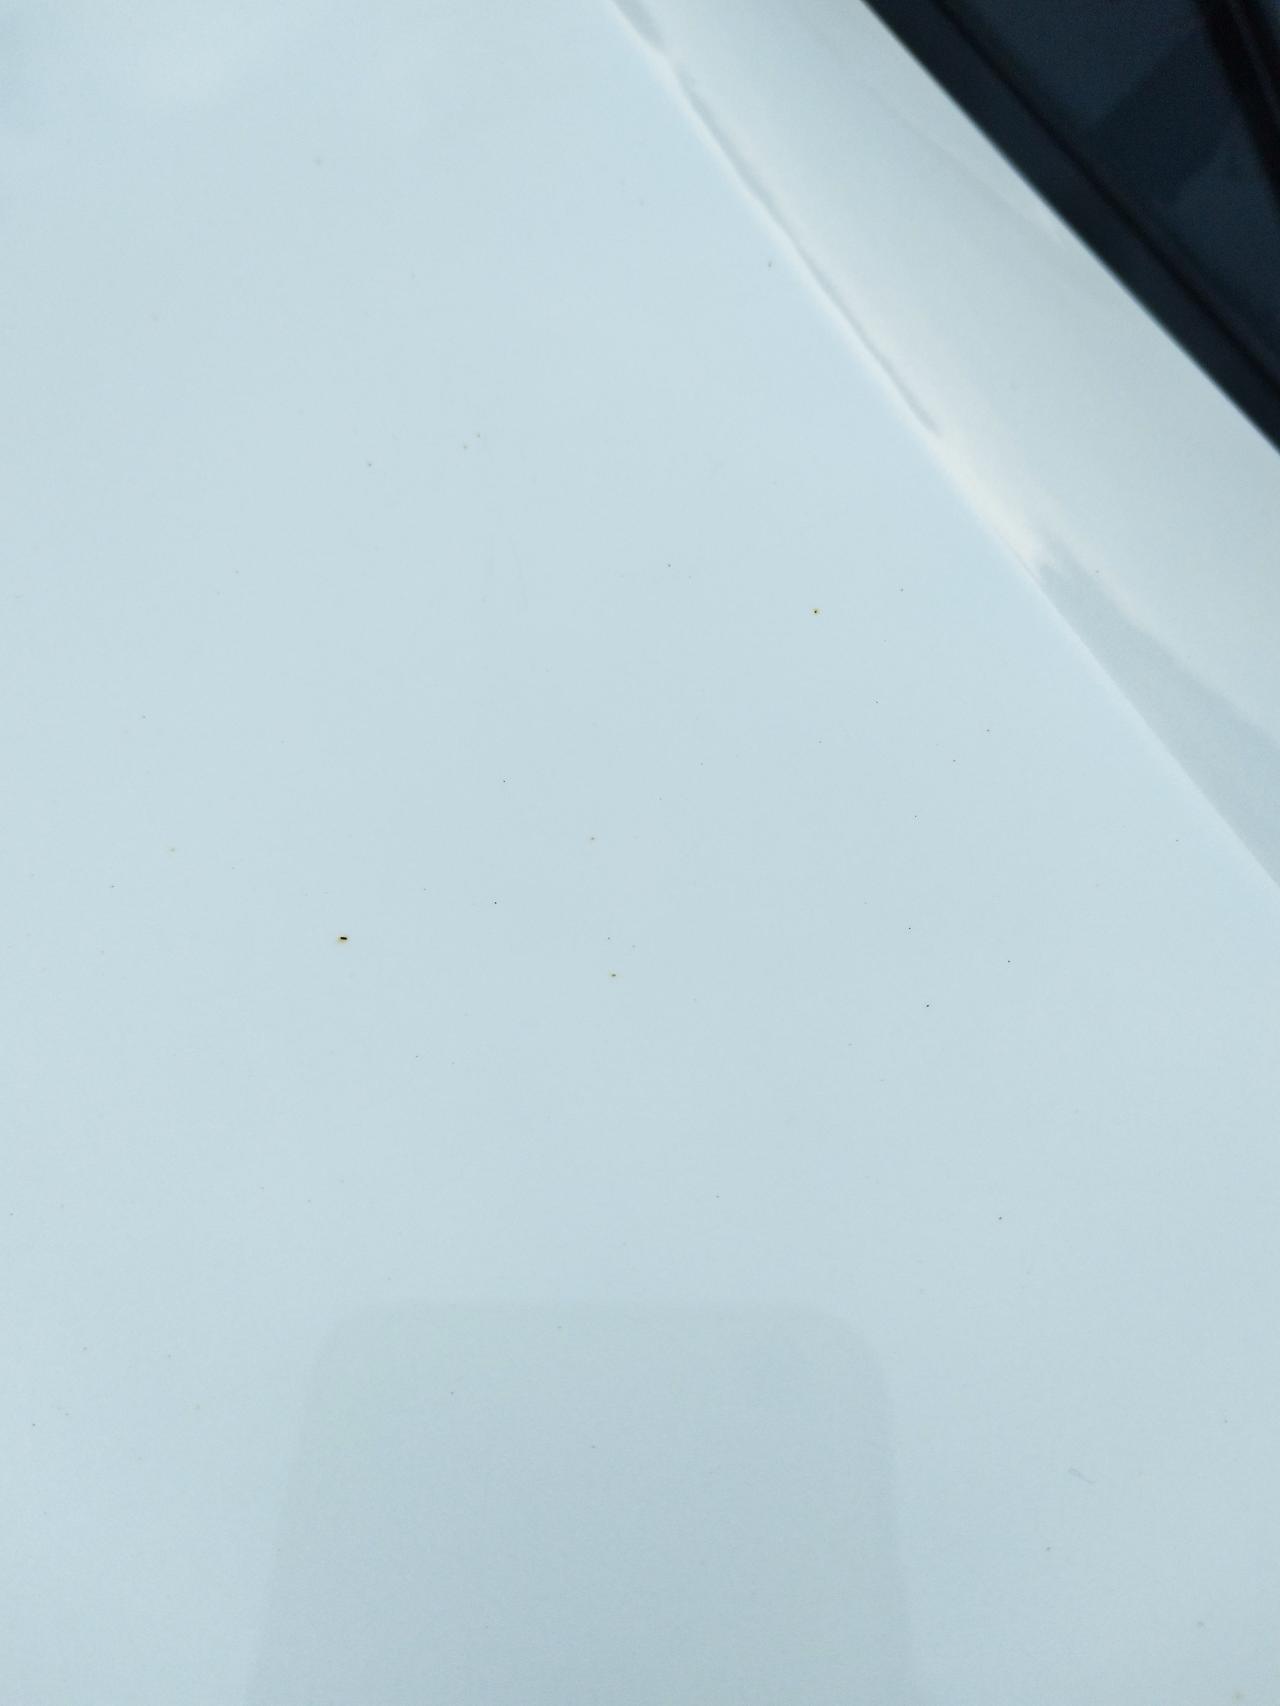 哈弗f7白车洗不干净。洗了后车身上有好多黑点点洗不掉